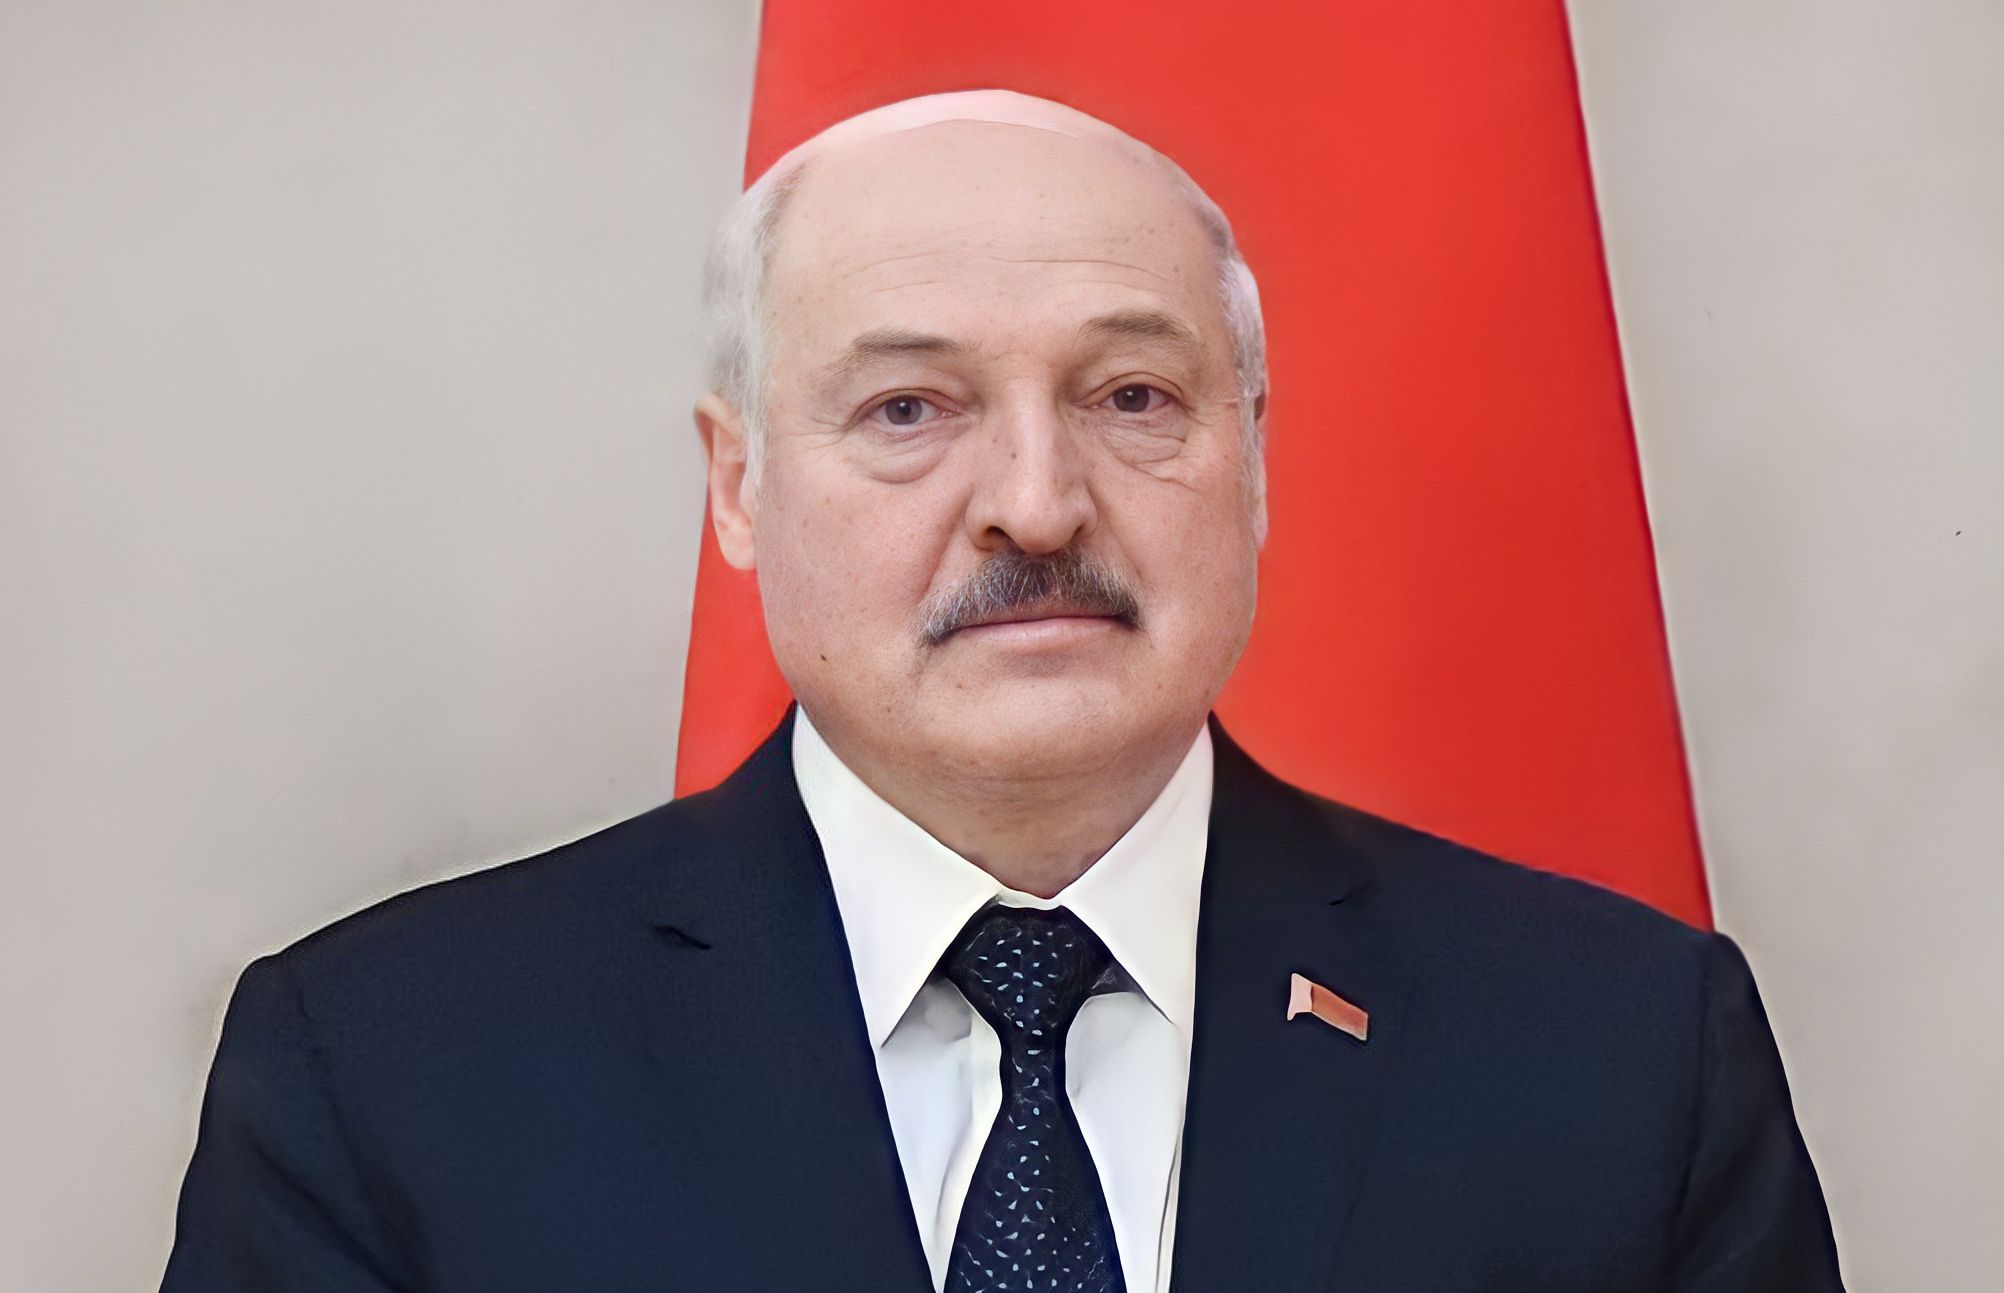 Białoruskie władze pilnie wezwały ambasadora Ukrainy. Aleksandr Łukaszenka ma się czuć zagrożony ukraińską interwencją na terenie Białorusi.